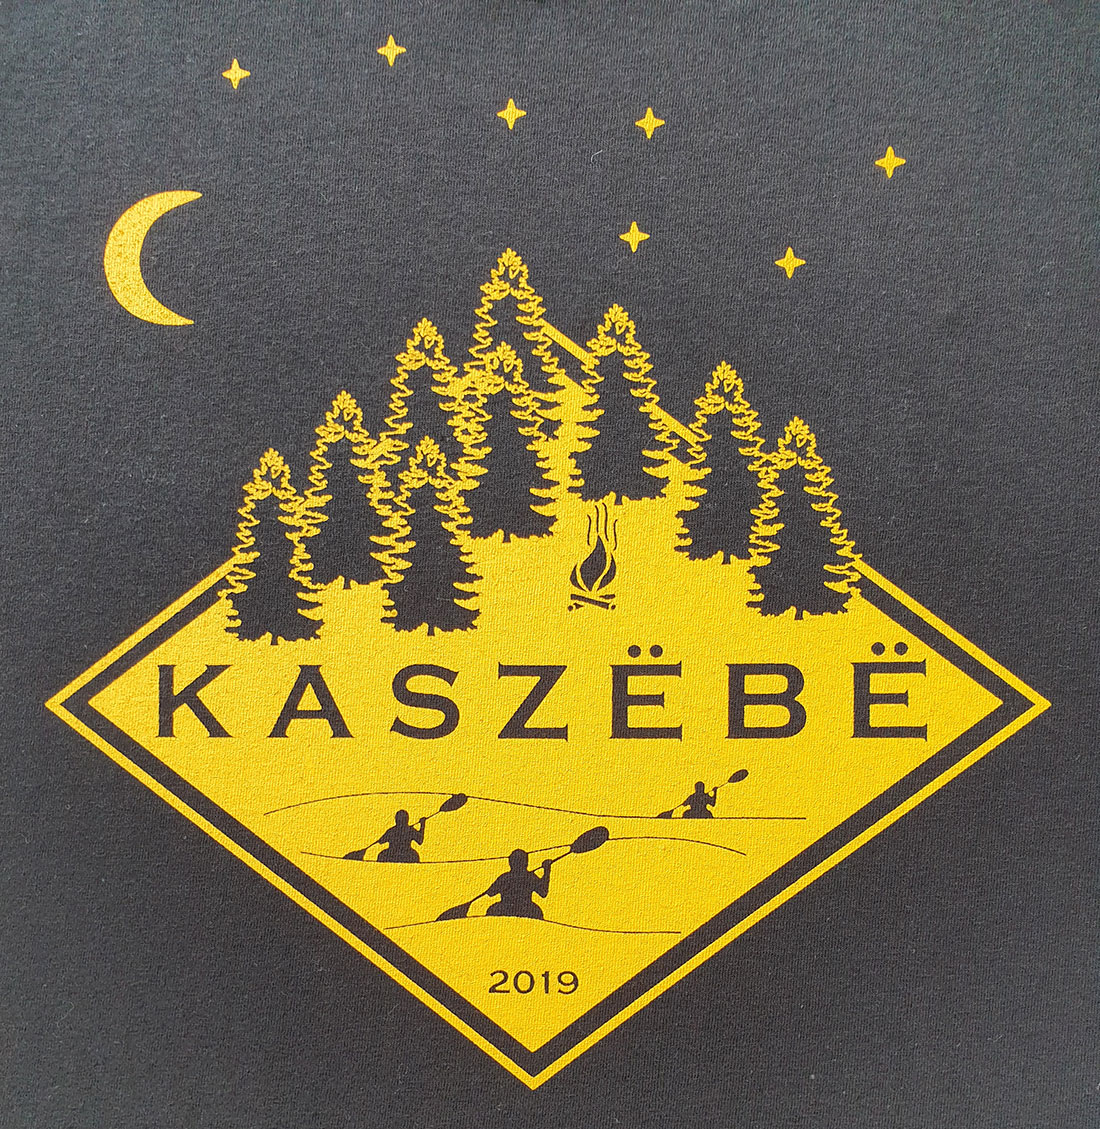 Kaszebe 2019 (technika: sitodruk)